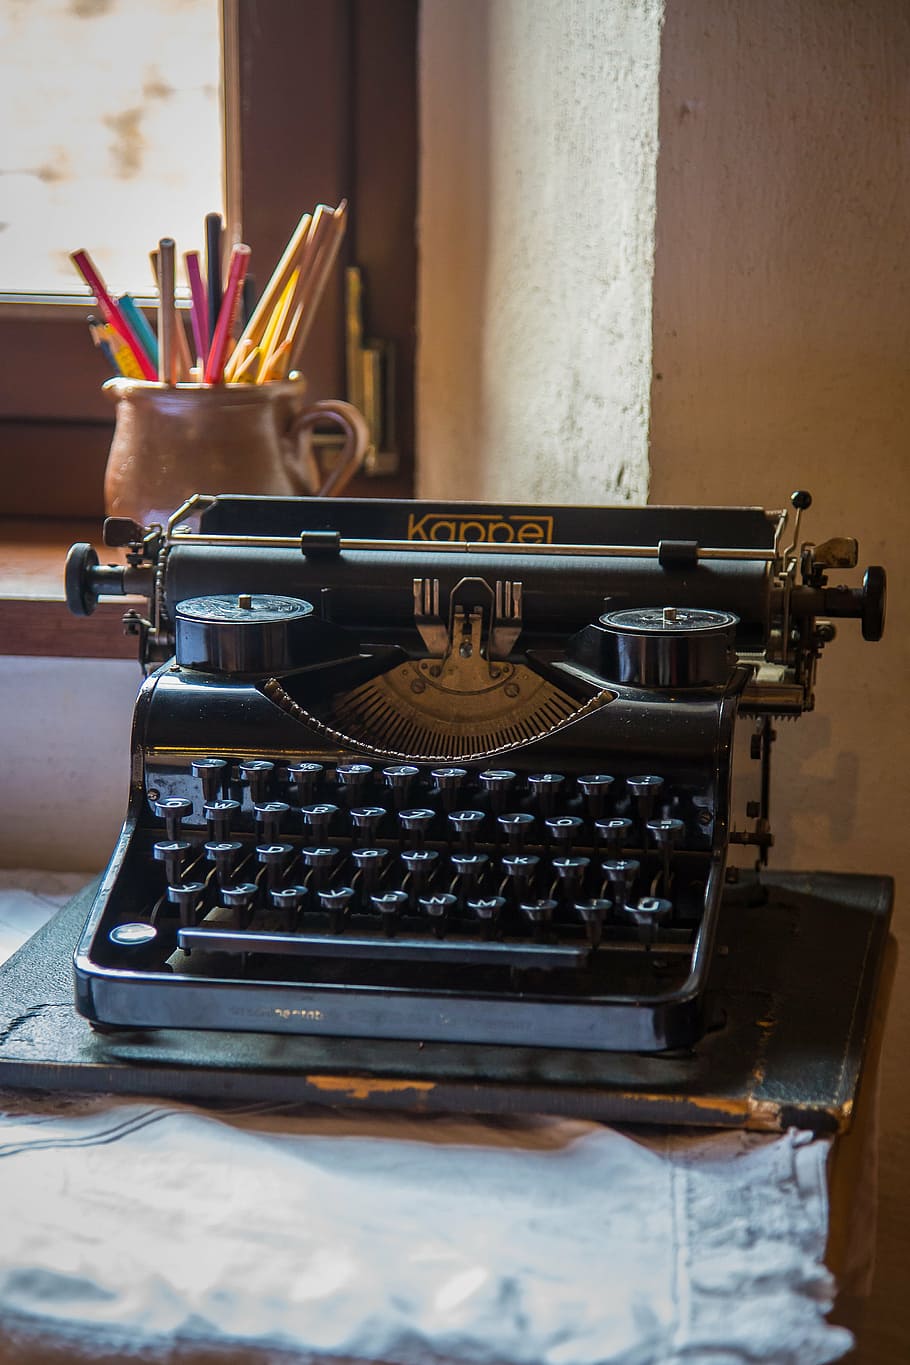 máquina de escrever, deixar, chaves, torneira, material de escritório, historicamente, cartas, artigos de papelaria, dentro de casa, mesa